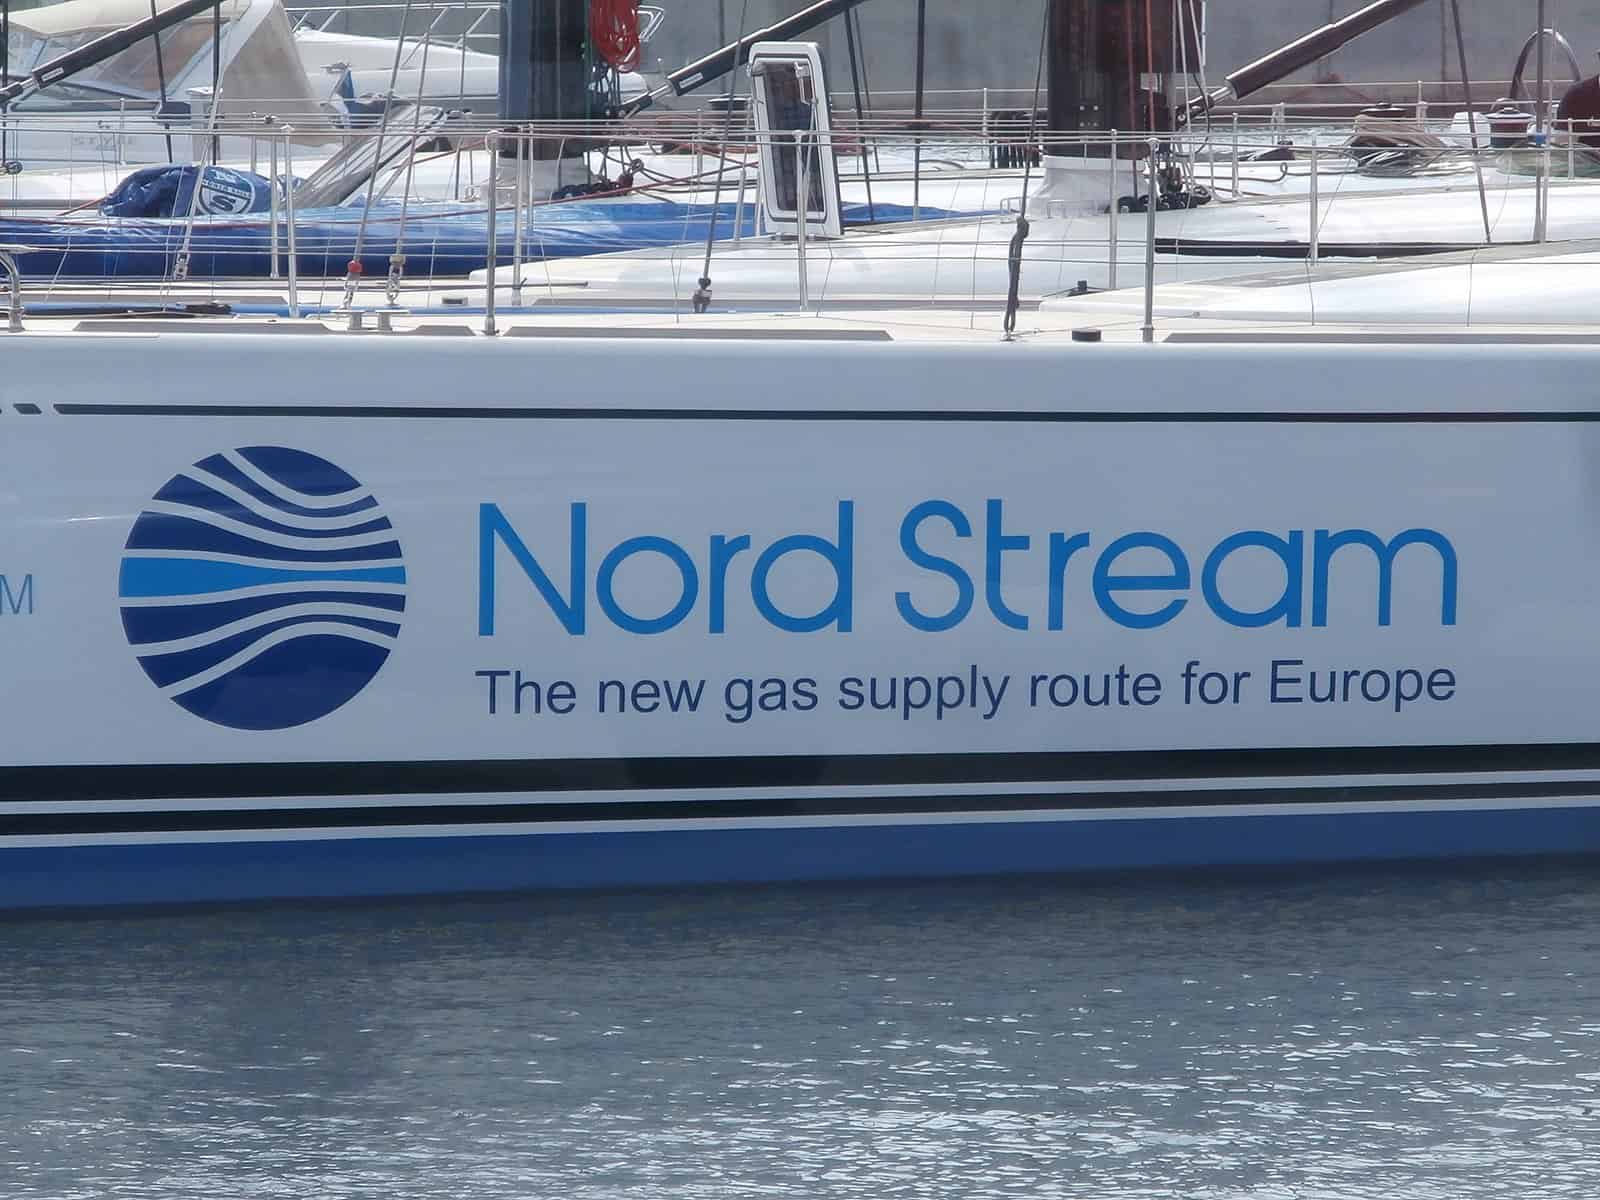 Nga đình chỉ hoạt động của đường ống Nord Stream 1 trong 10 ngày để bảo trì định kỳ. Ảnh minh họa: EU Today